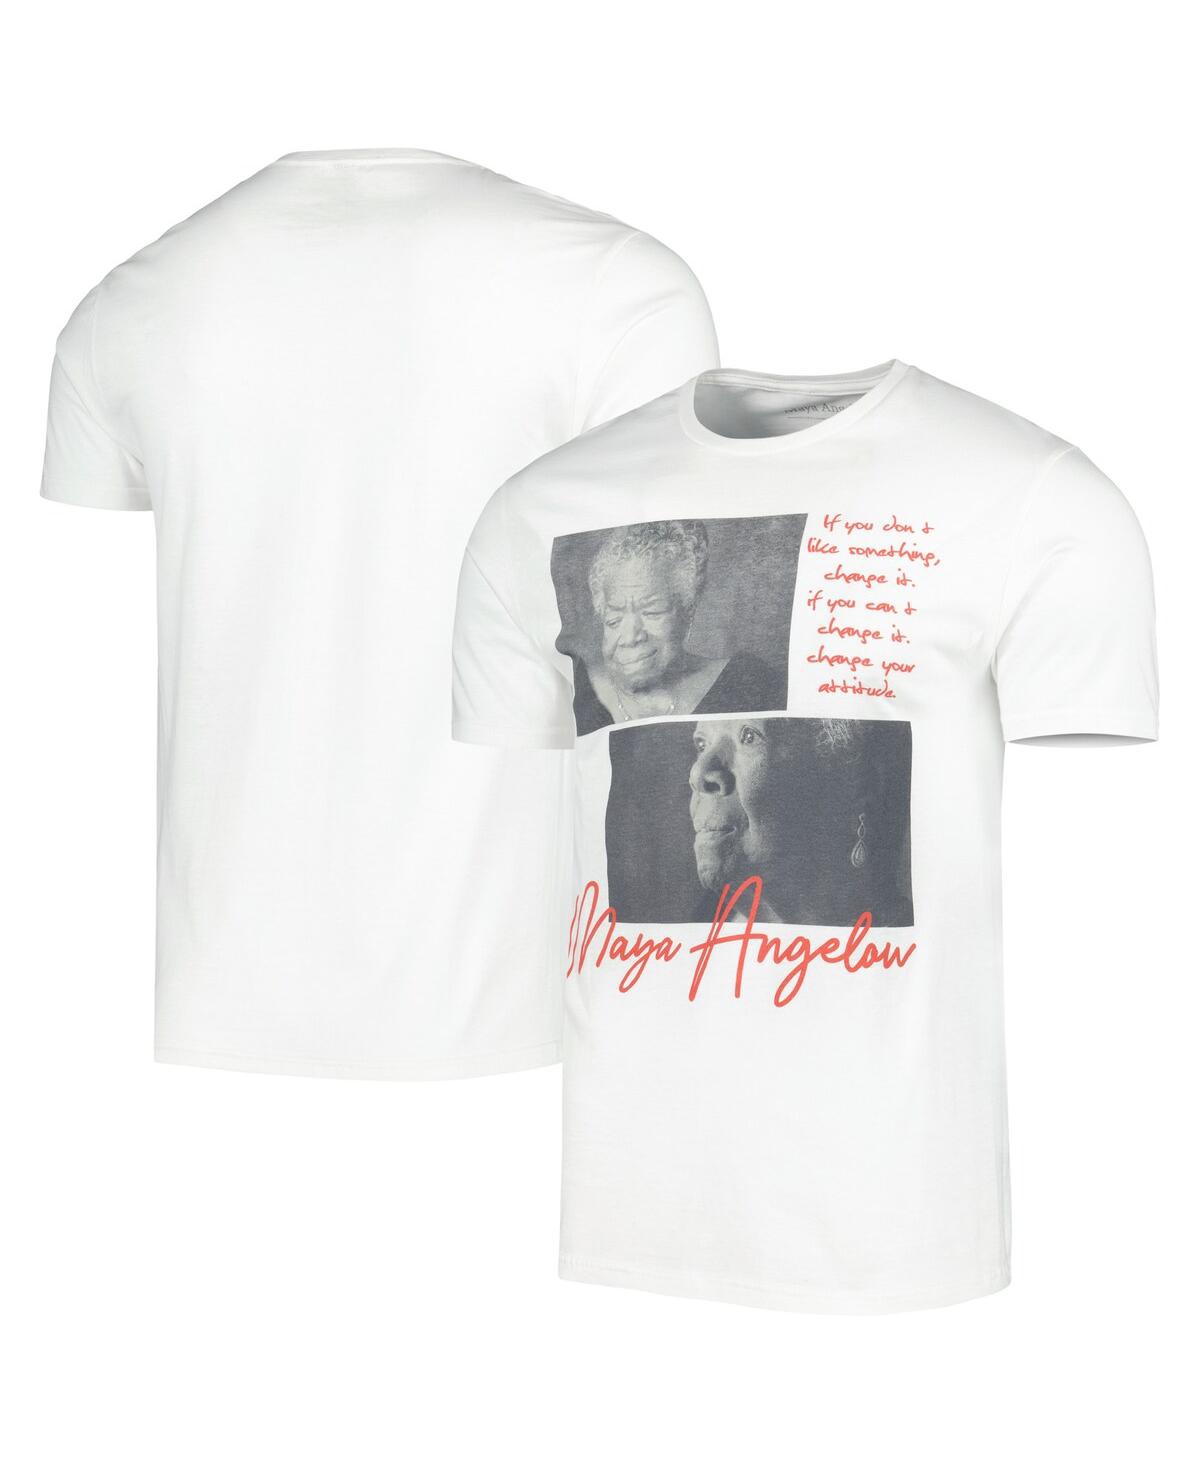 Philcos Men's And Women's White Maya Angelou Graphic T-shirt